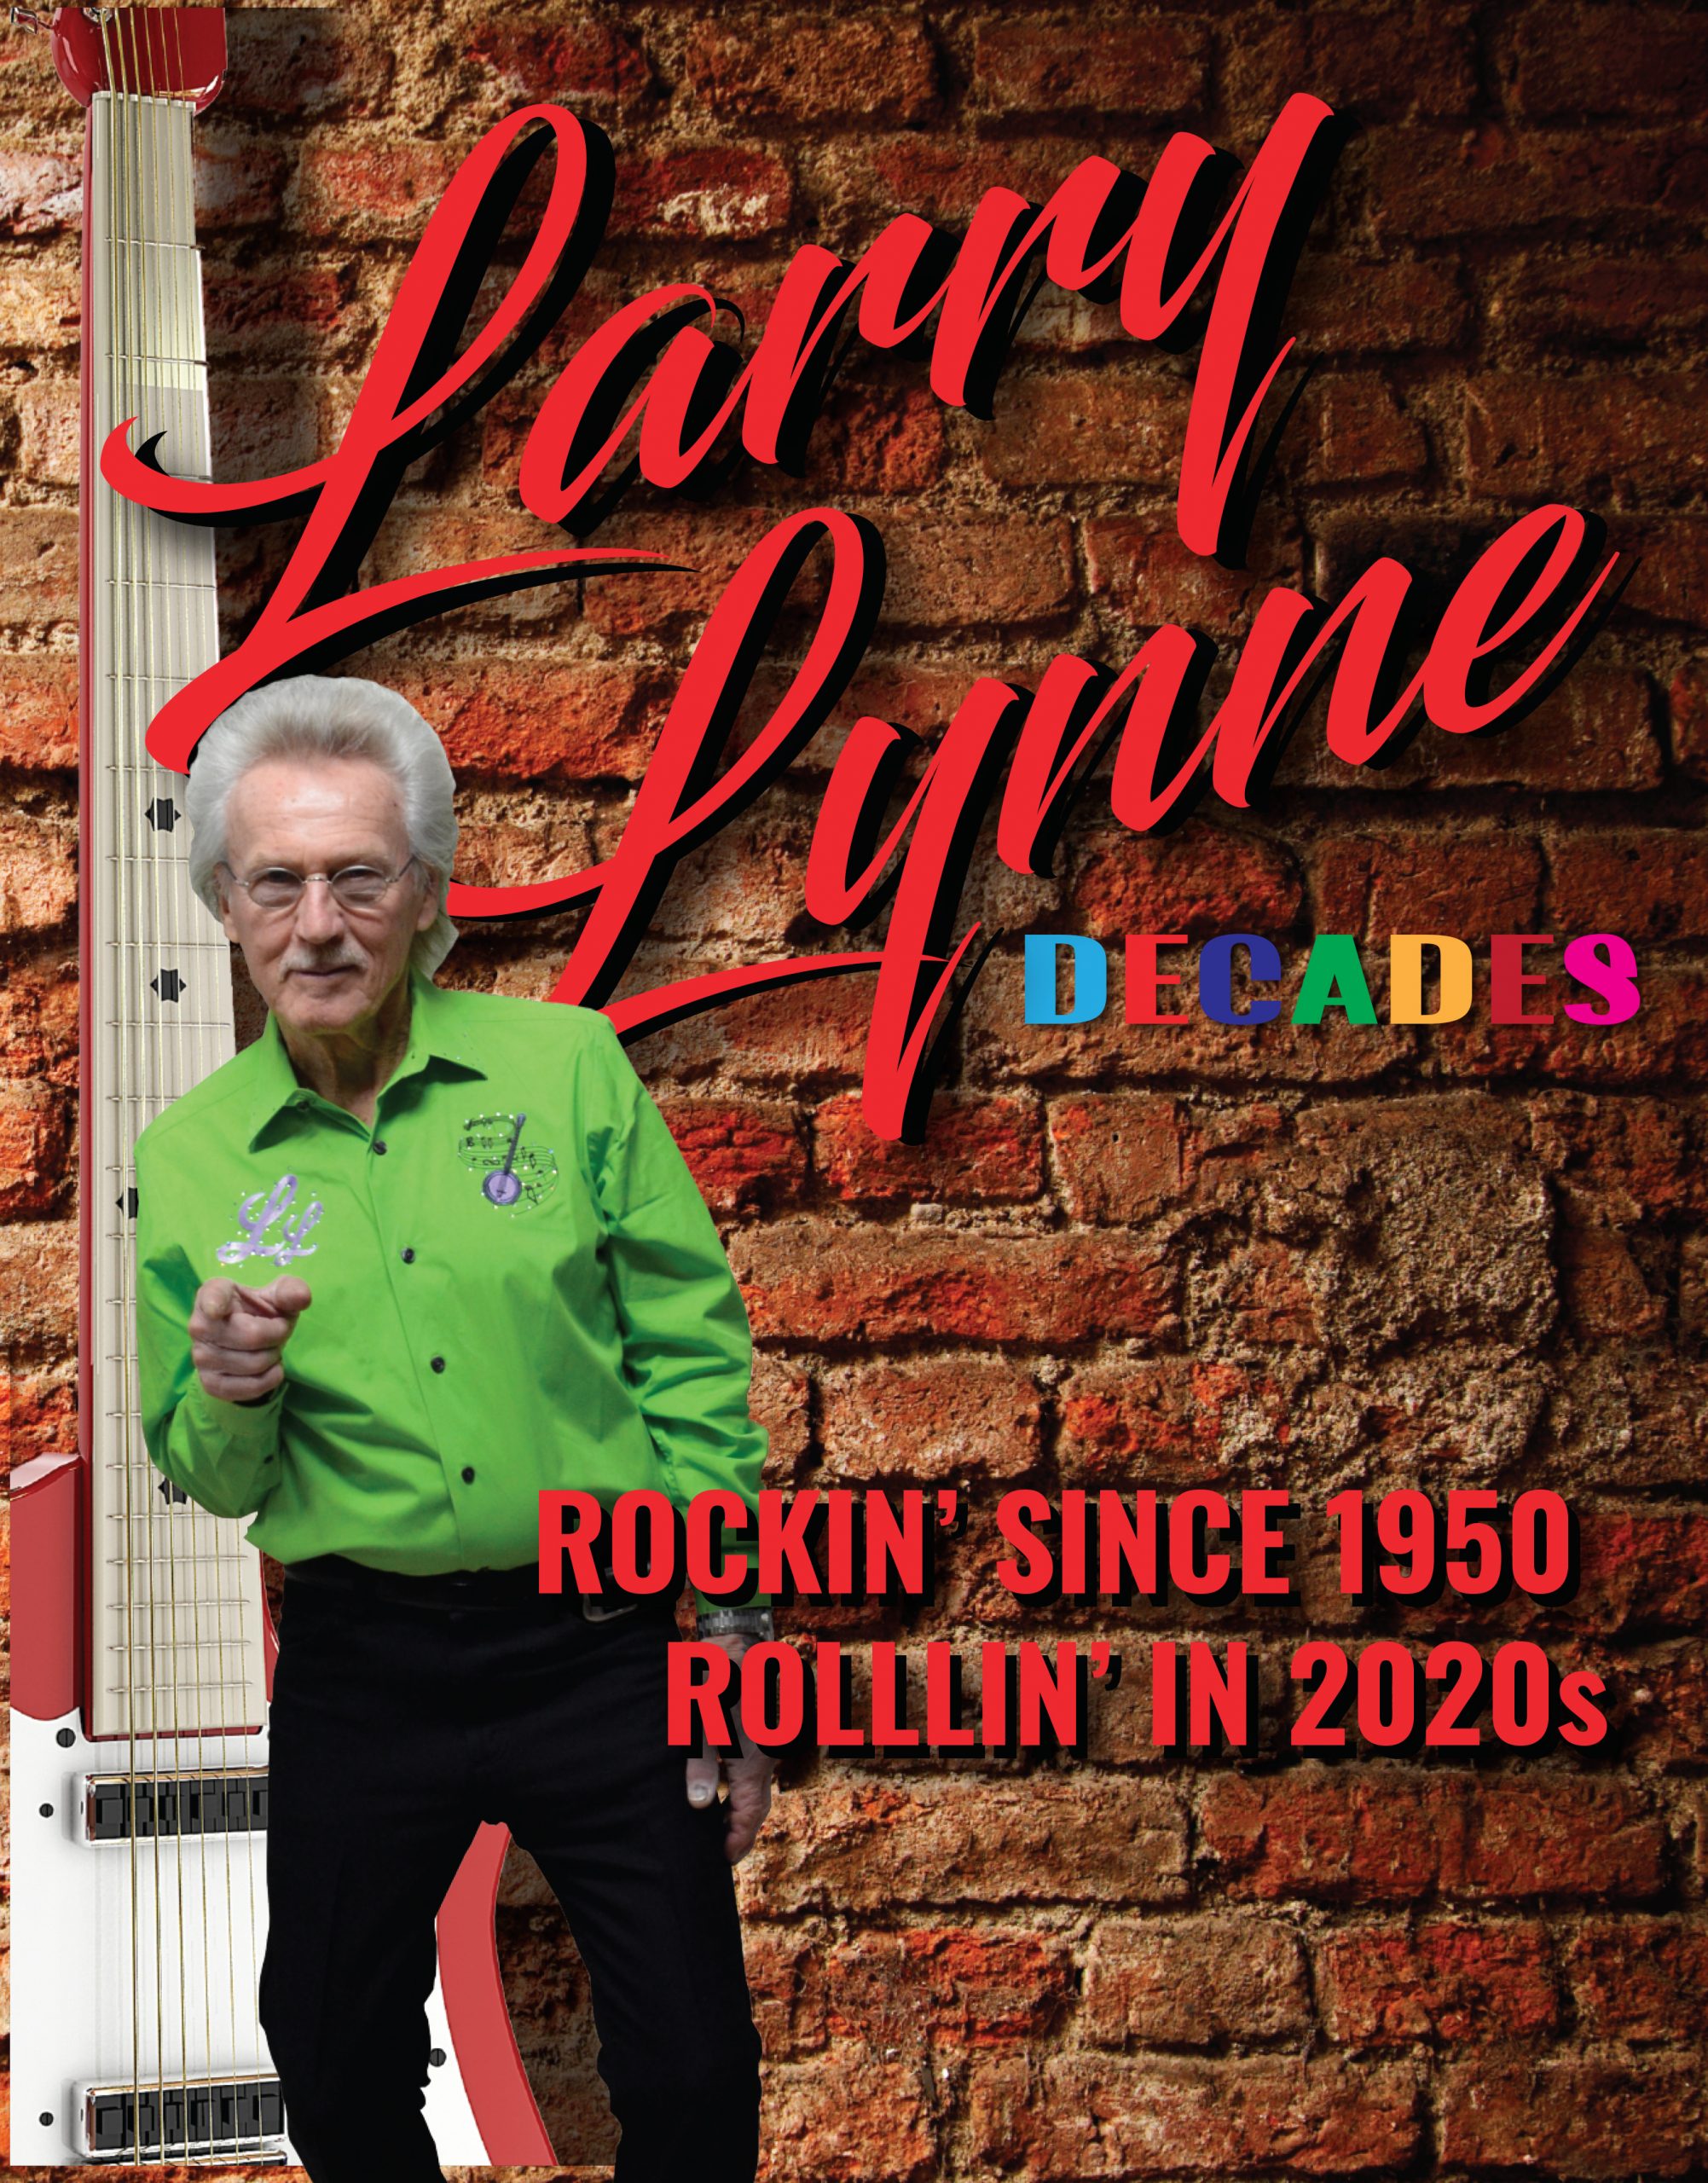 Larry Lynne Decades